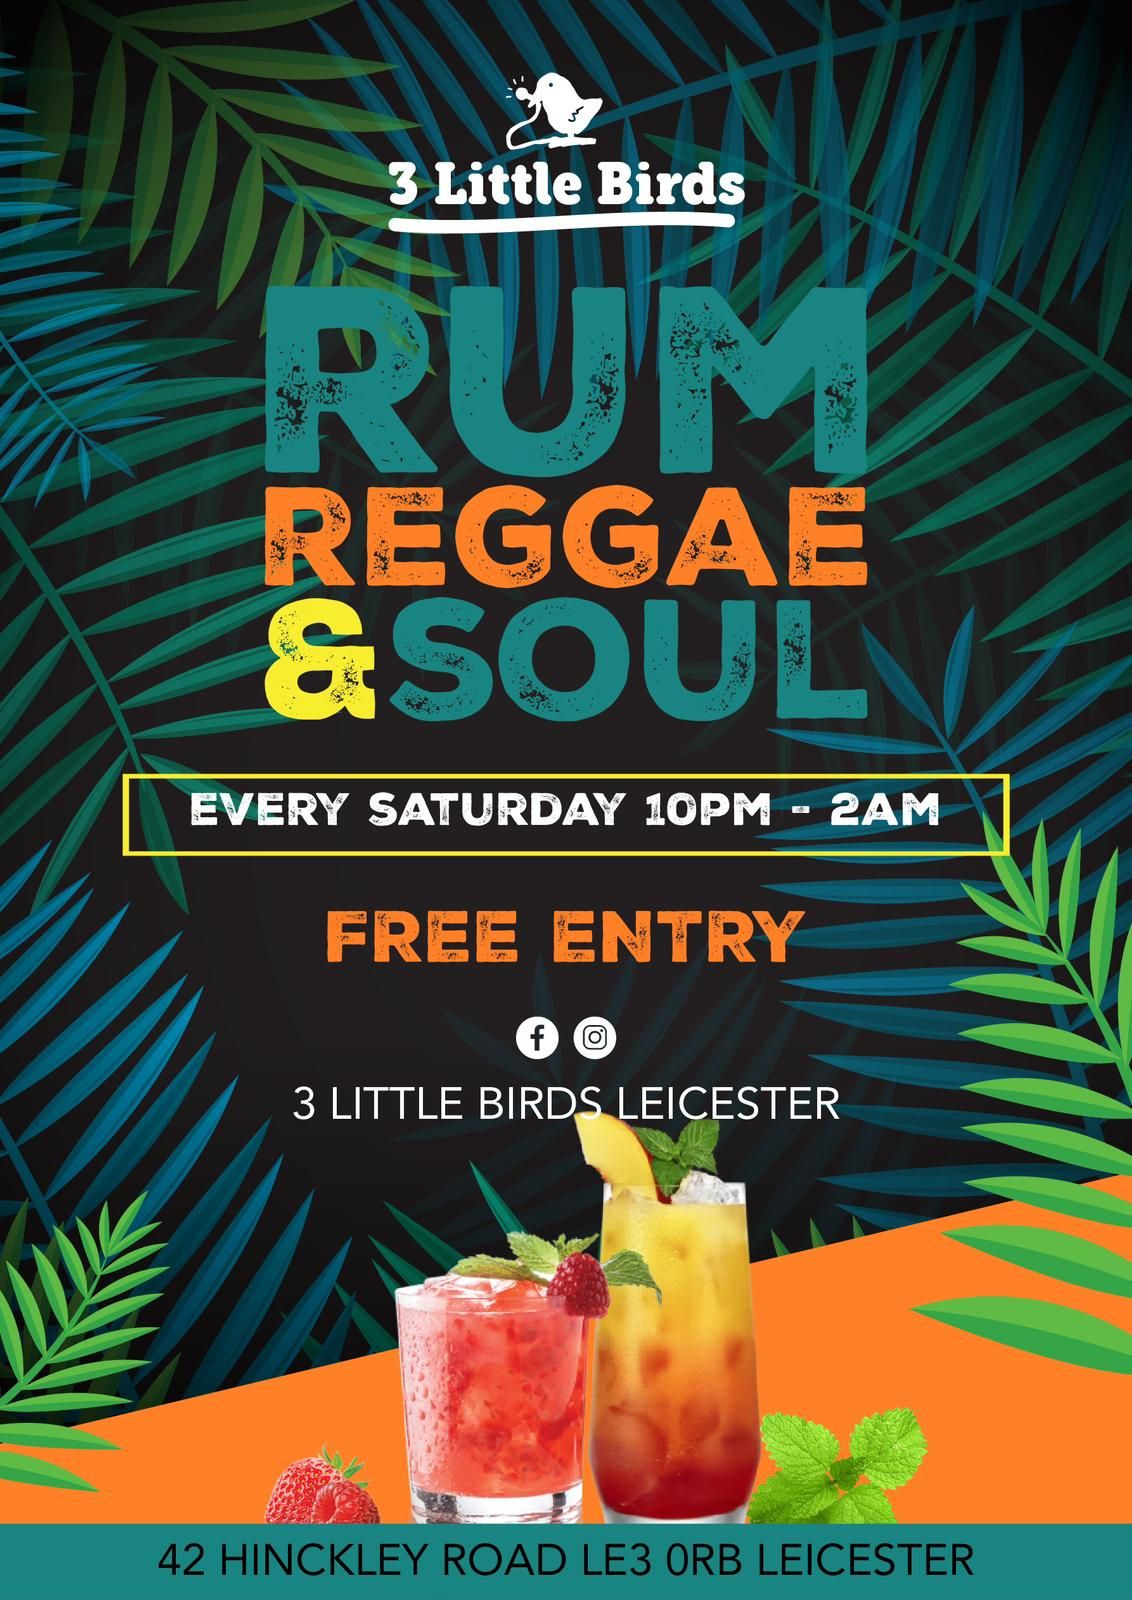 Rum, Reggae & Soul